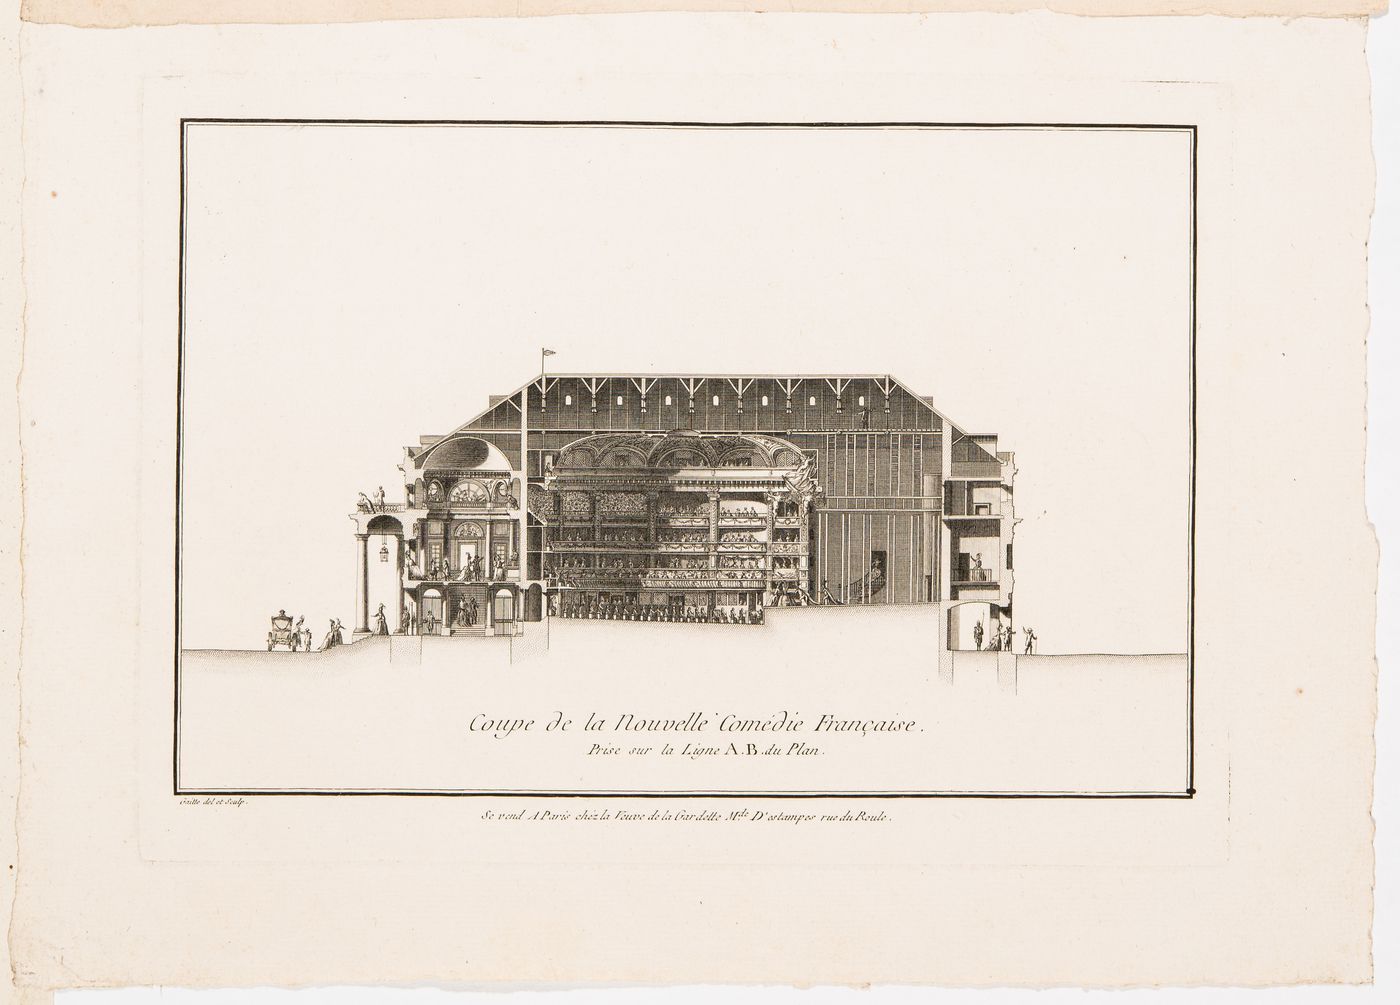 Théâtre de l'Odéon, Paris: Longitudinal section